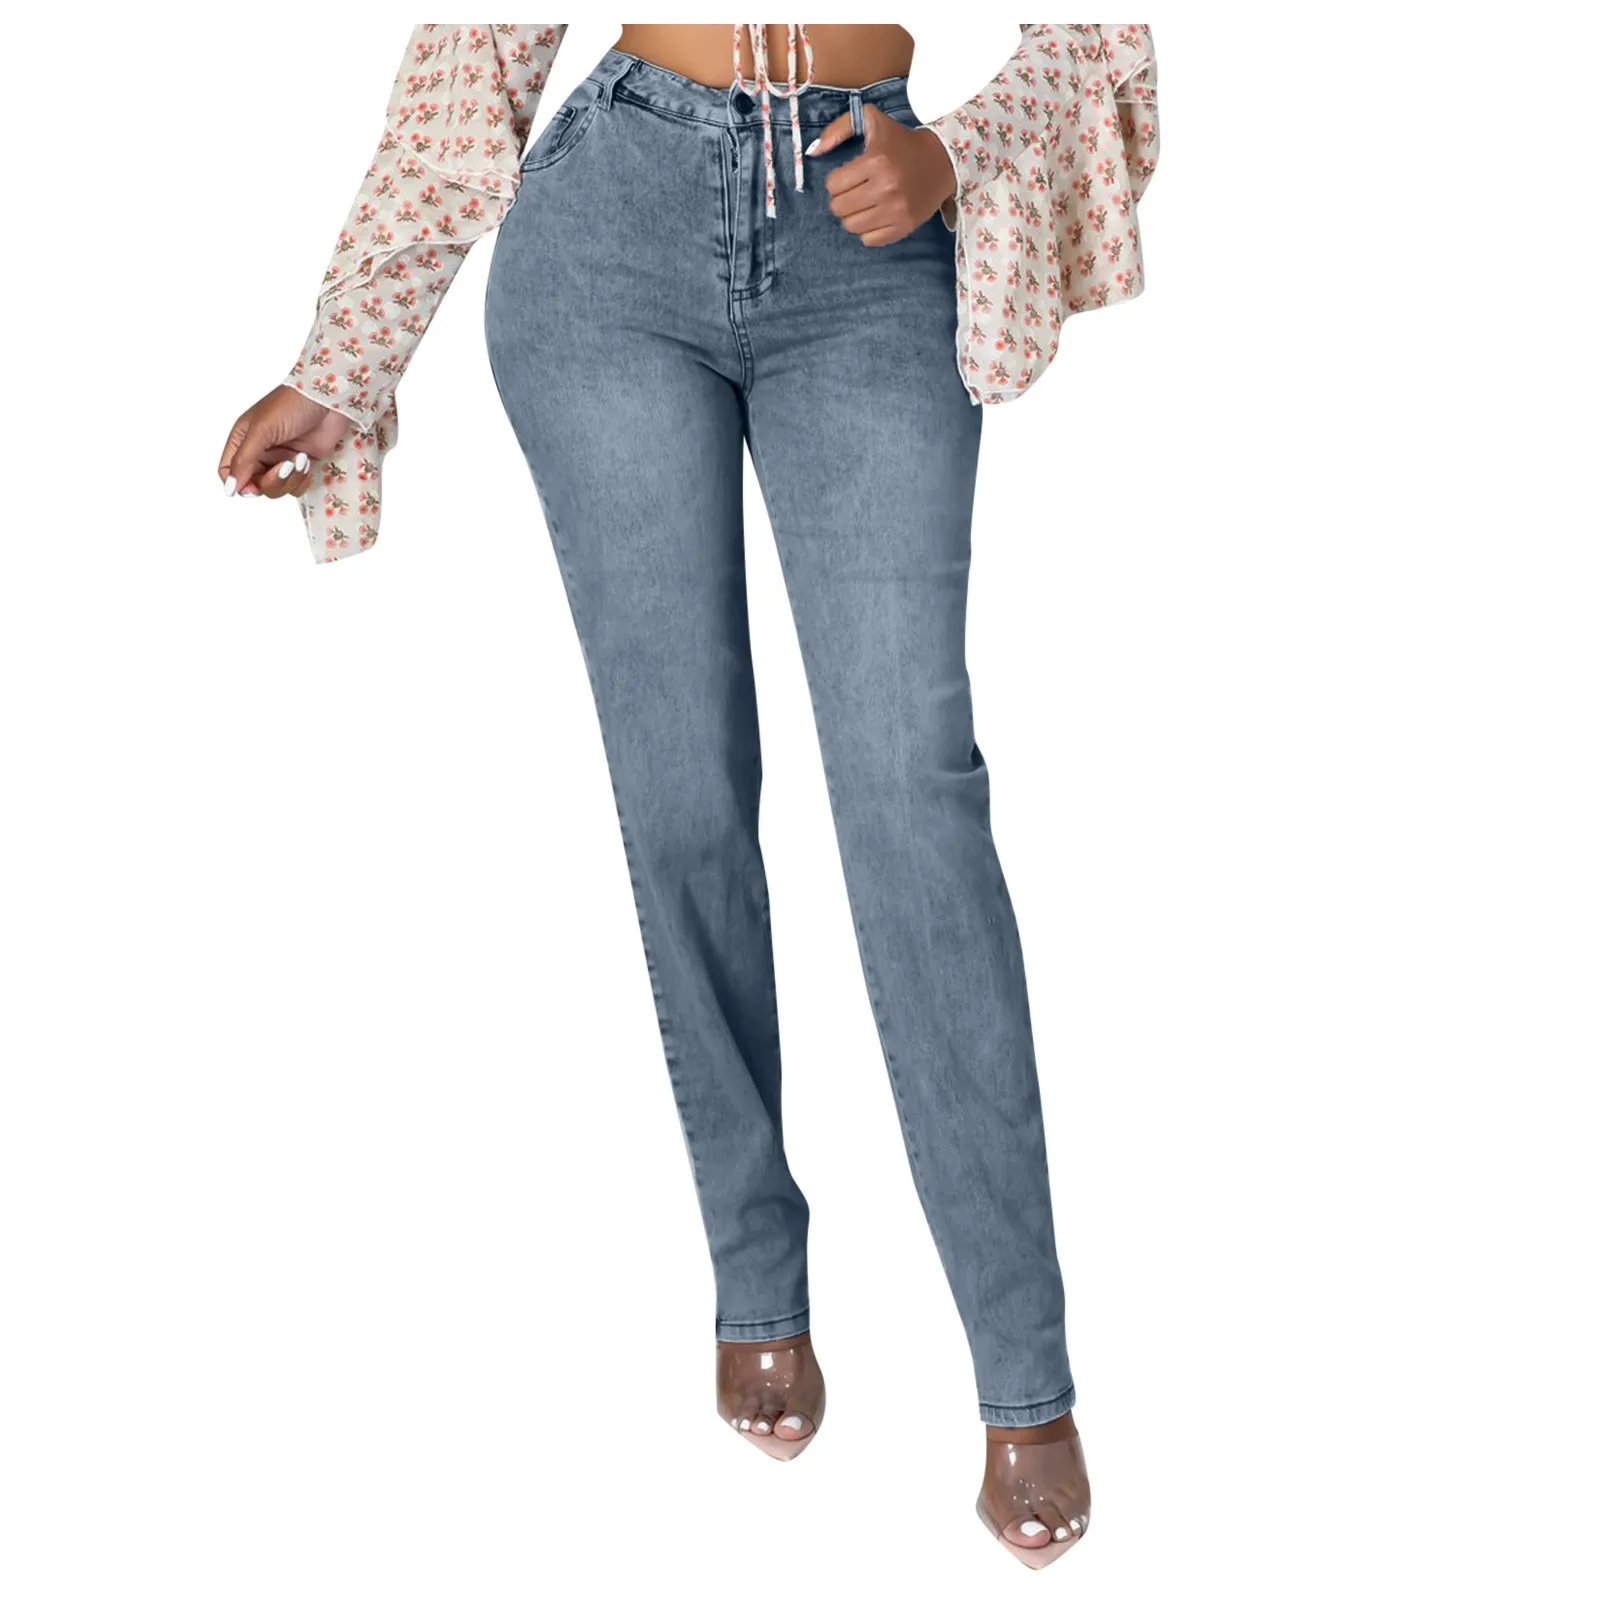 Женские узкие джинсы с рельефным переходом цвета длинные градиентом обычные